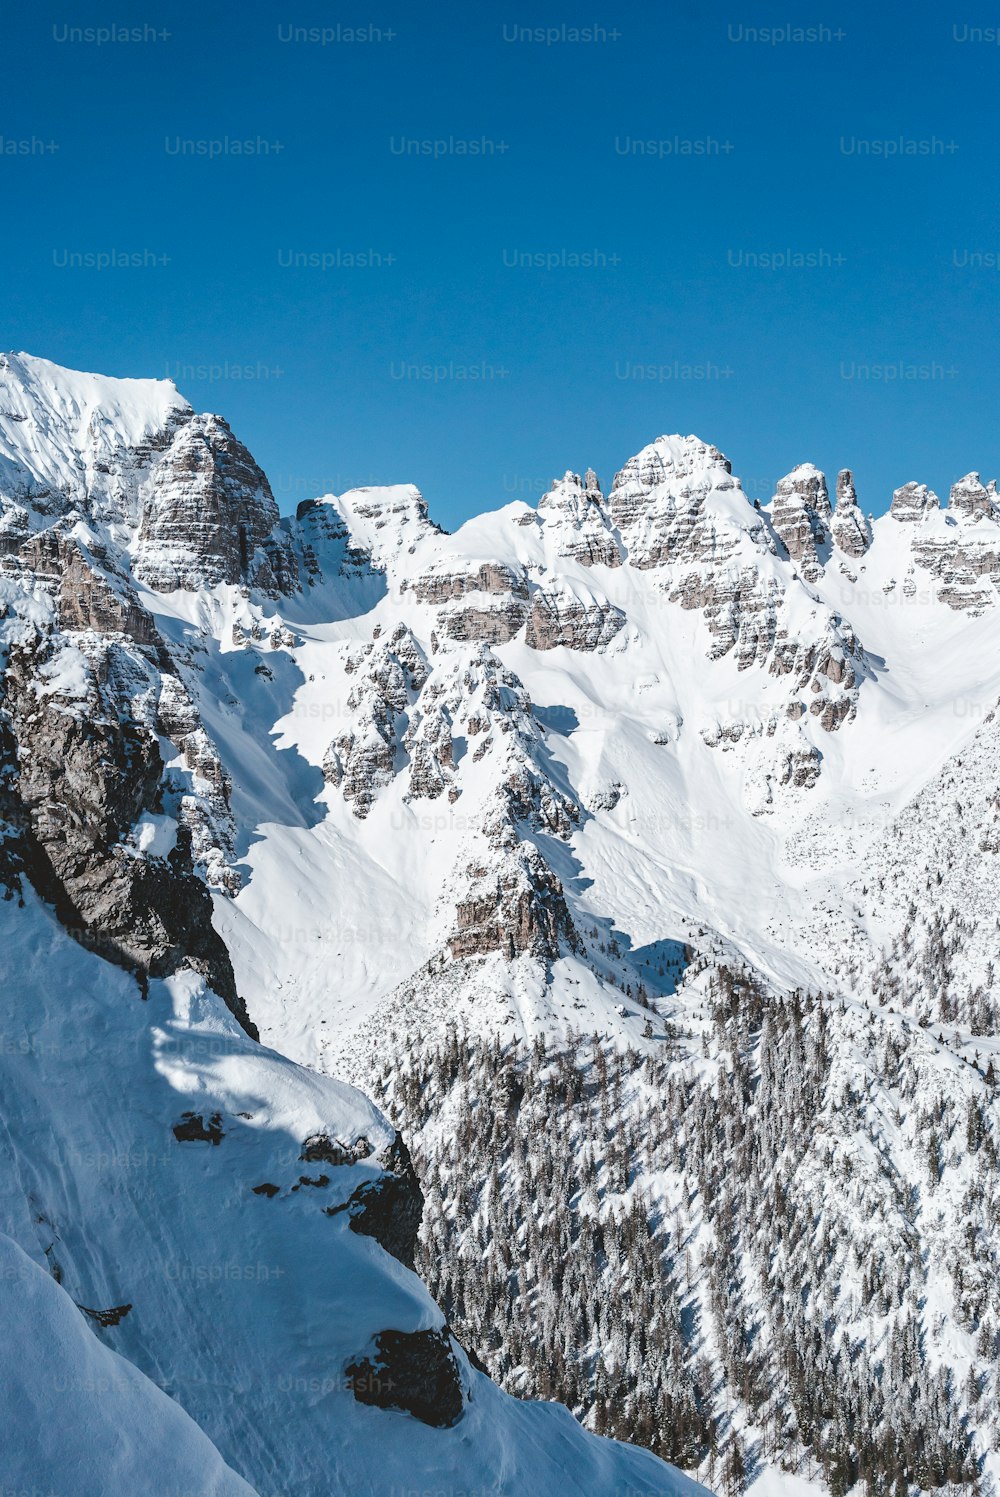 Un homme descend à skis le flanc d’une montagne enneigée